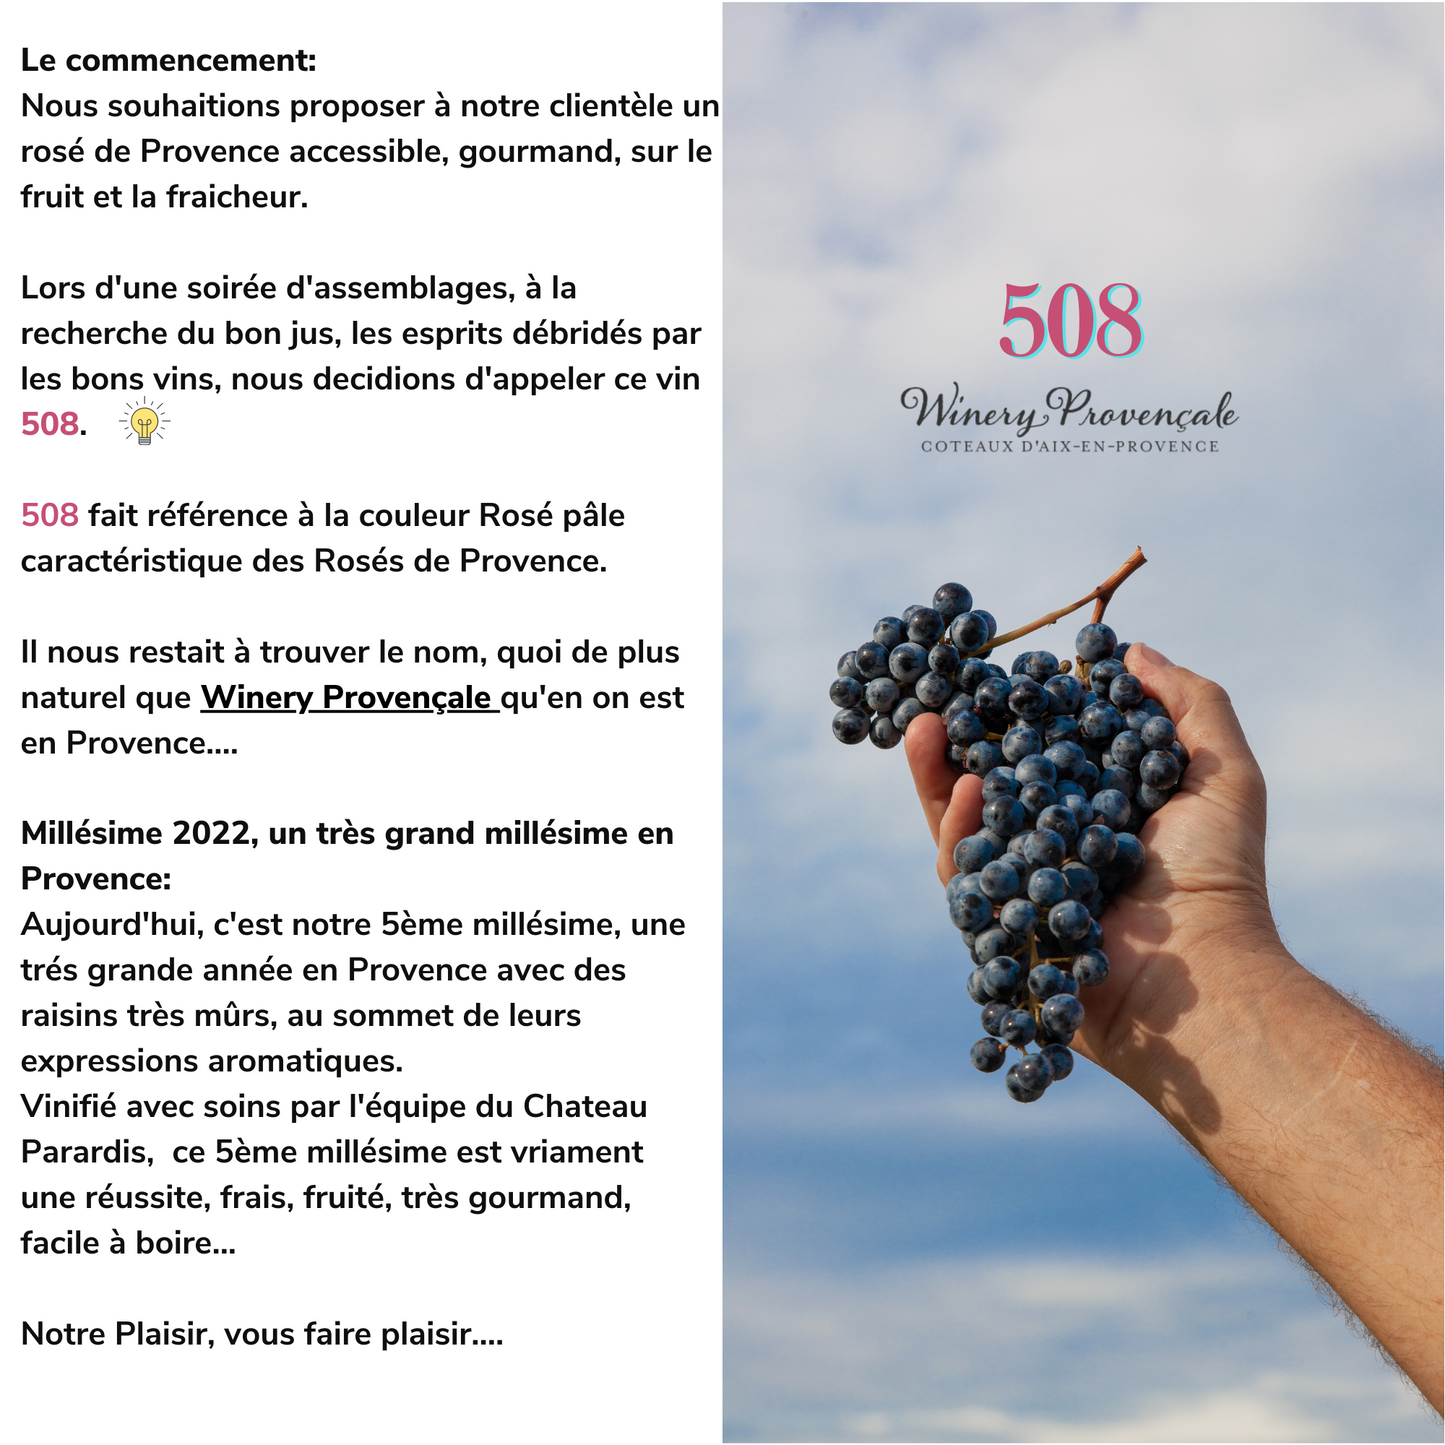 508 Winery Provençale Coteaux d'Aix en Provence Rose 2022